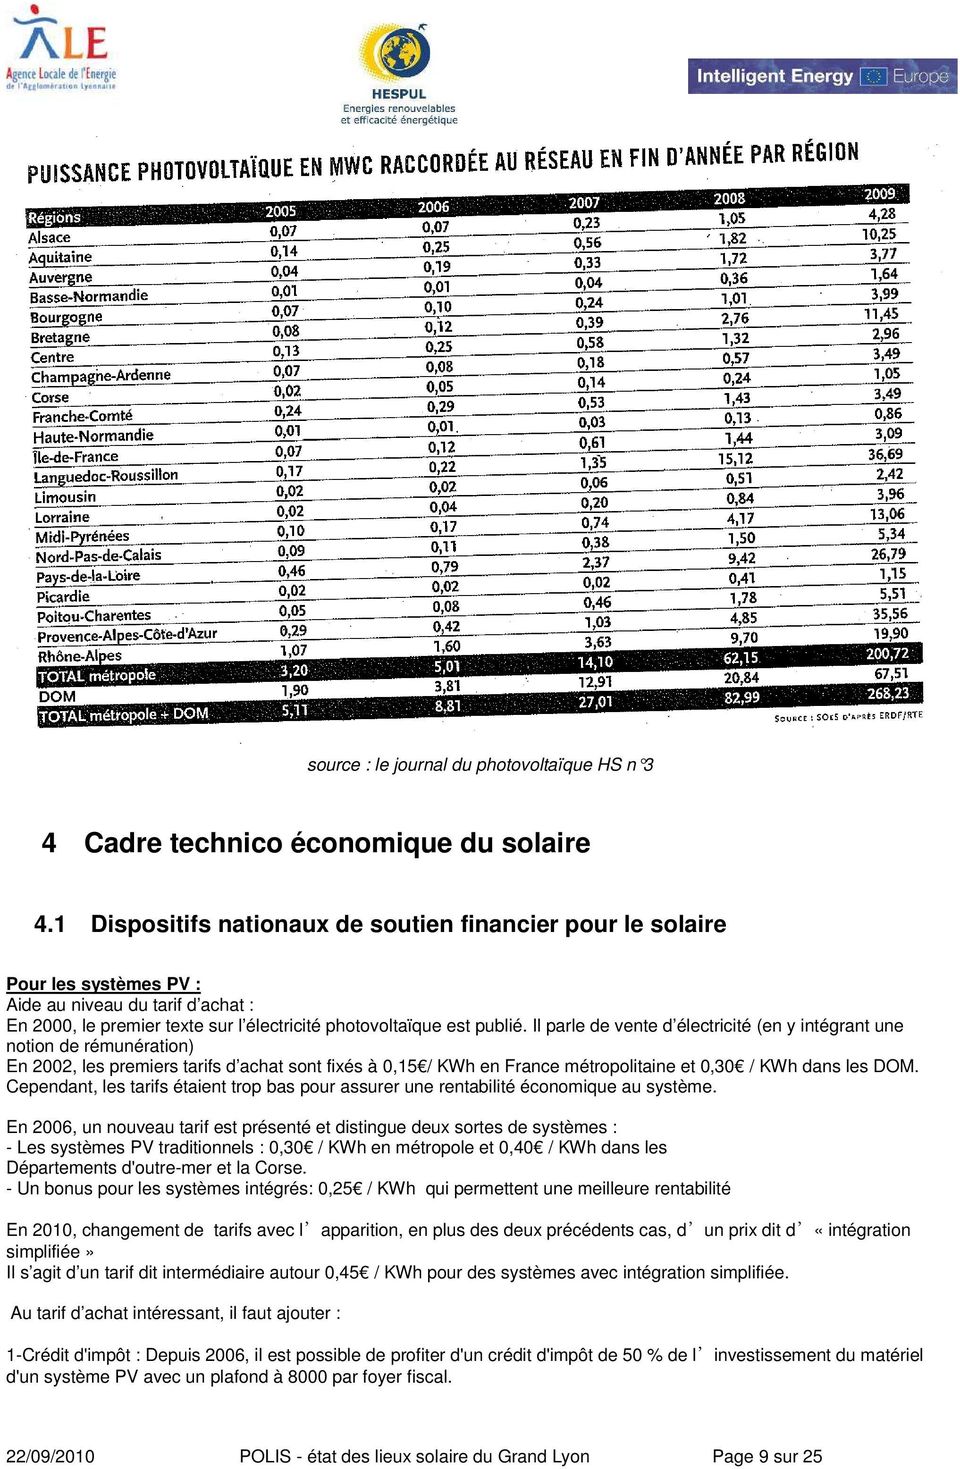 Il parle de vente d électricité (en y intégrant une notion de rémunération) En 2002, les premiers tarifs d achat sont fixés à 0,15 / KWh en France métropolitaine et 0,30 / KWh dans les DOM.